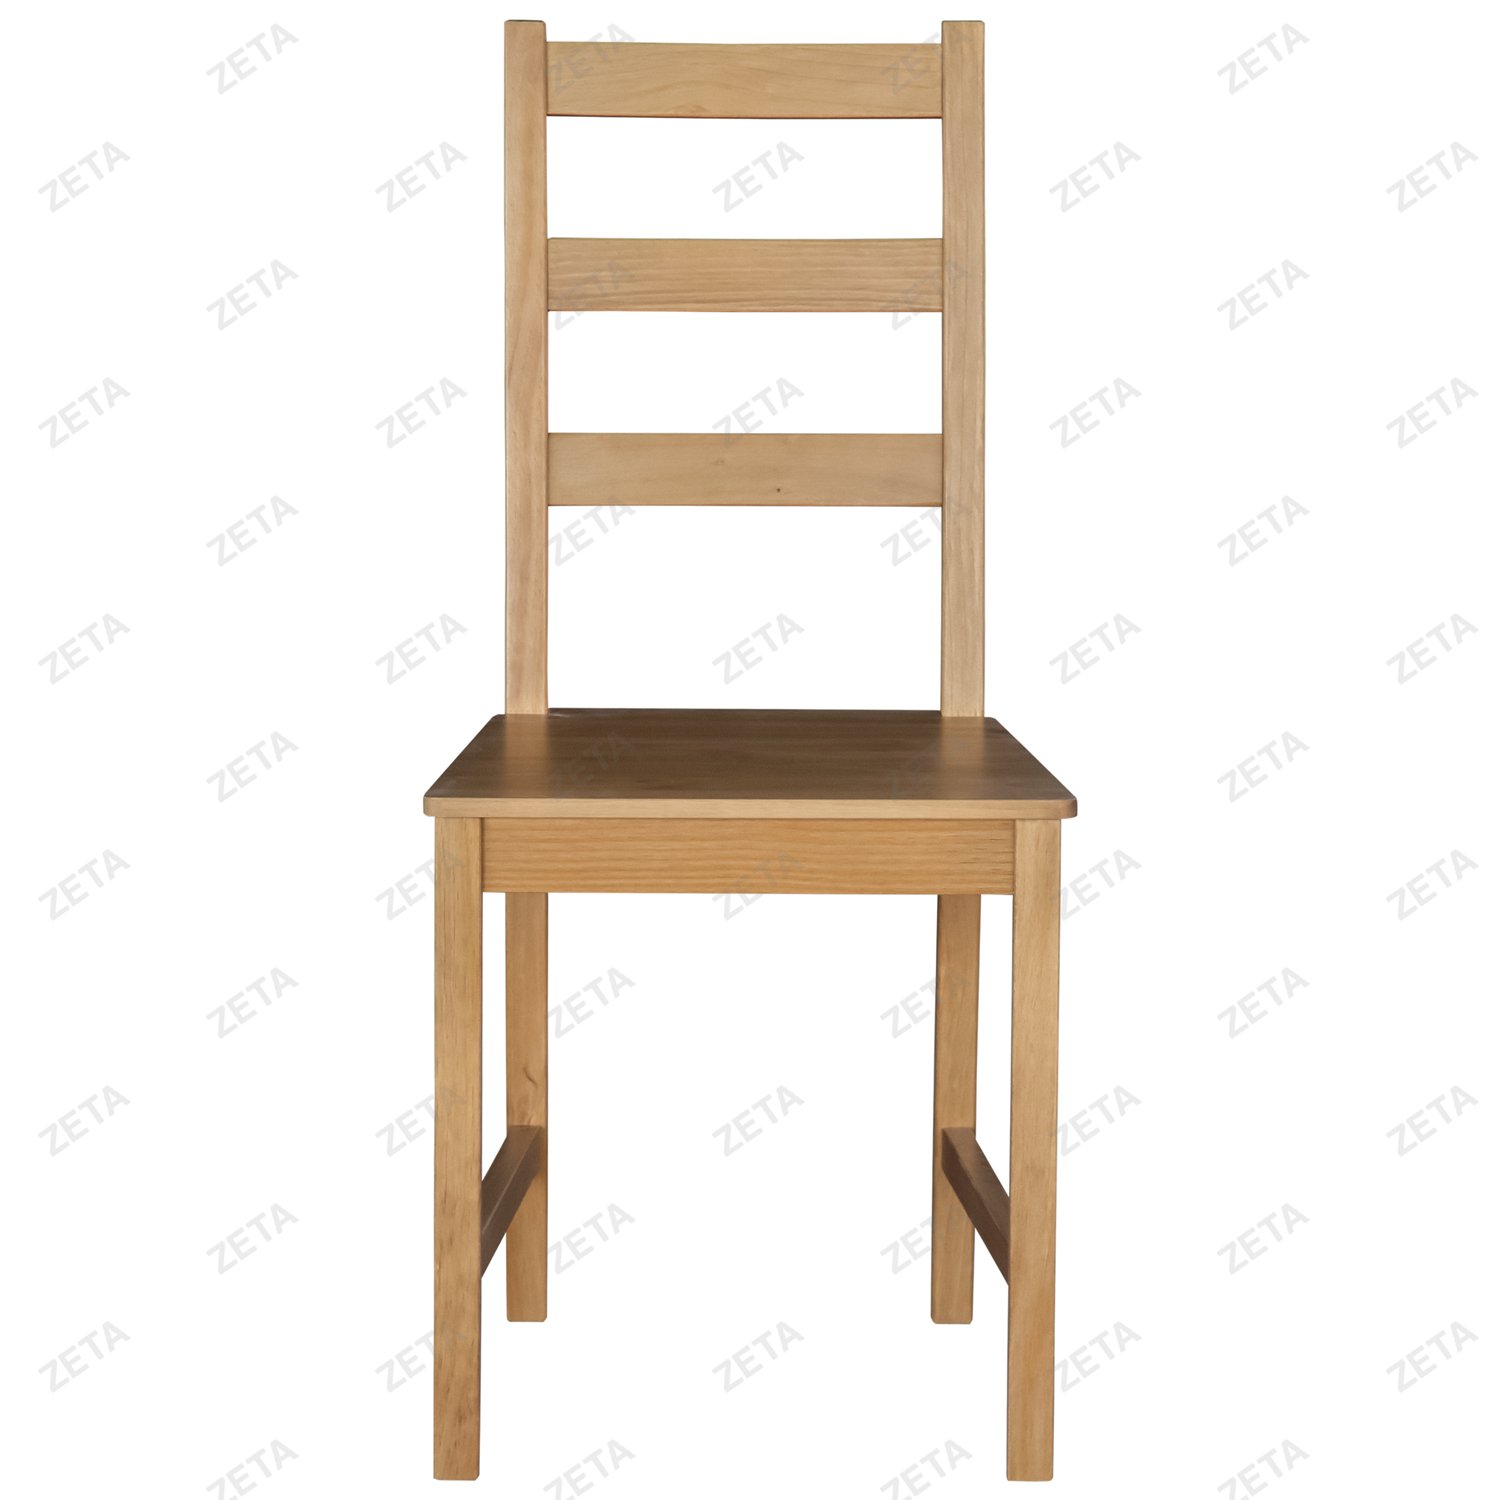 Стул "Ladder Back" (натуральный) от производителей IKEA (ВИ) - изображение 2